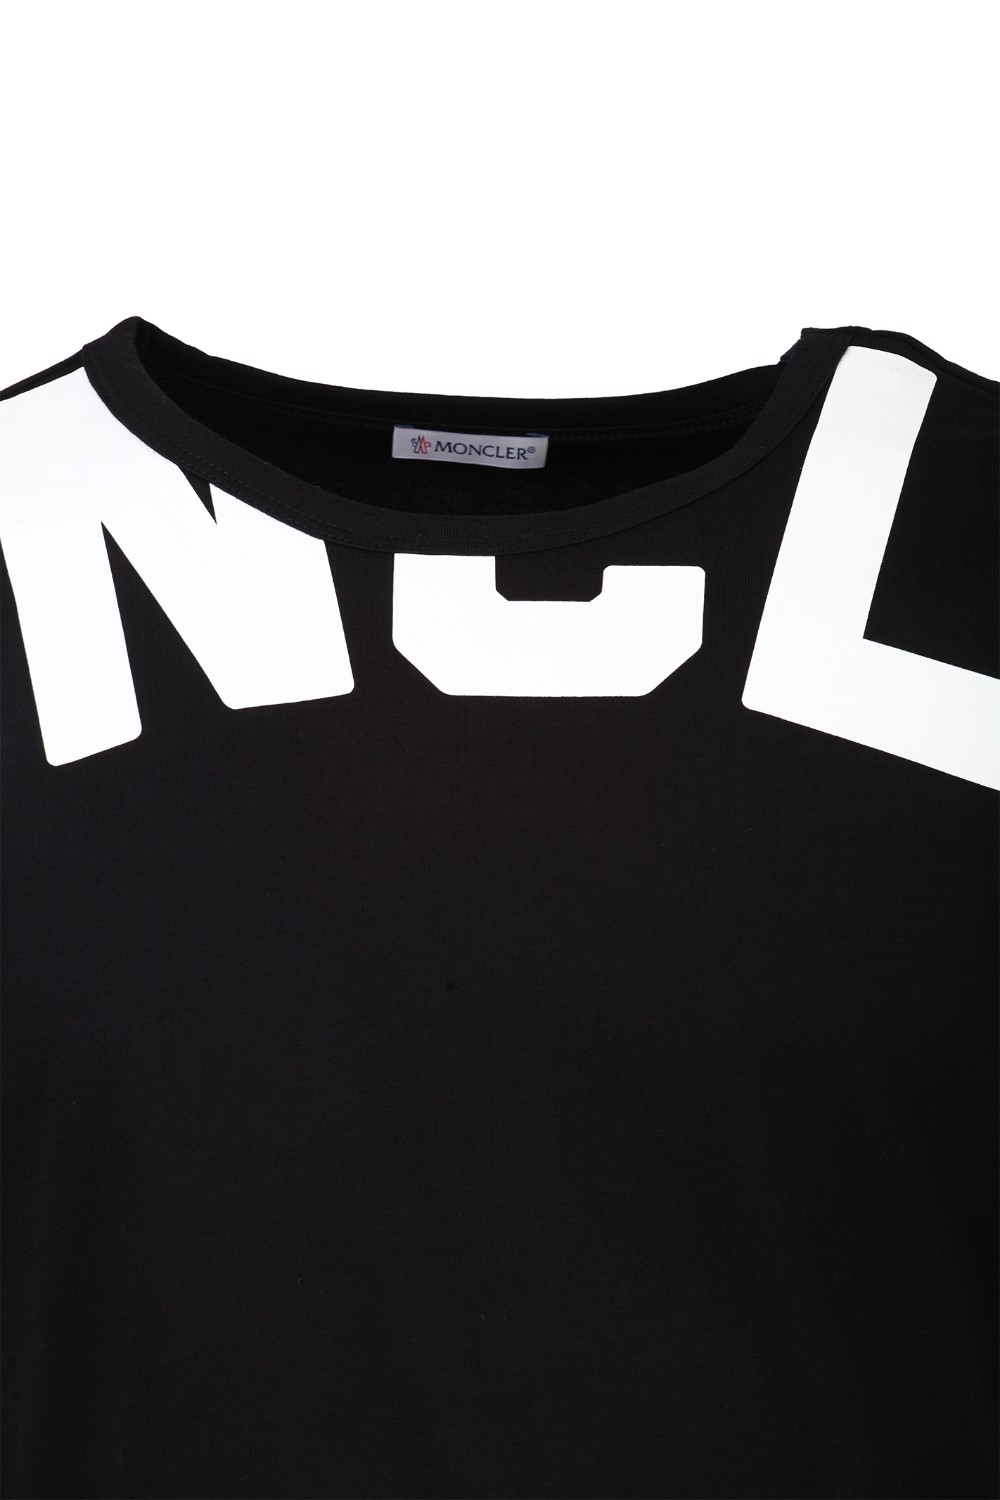 shop MONCLER Saldi T-shirt: Moncler T-shirt in cotone di colore nero con stampa Logo.
Girocollo.
Maniche corte.
Stampa grafica Logo a contrasto.
Vestibilità regolare.
Composizione: 100% cotone.. 8C707 10 V8094-999 number 5945748